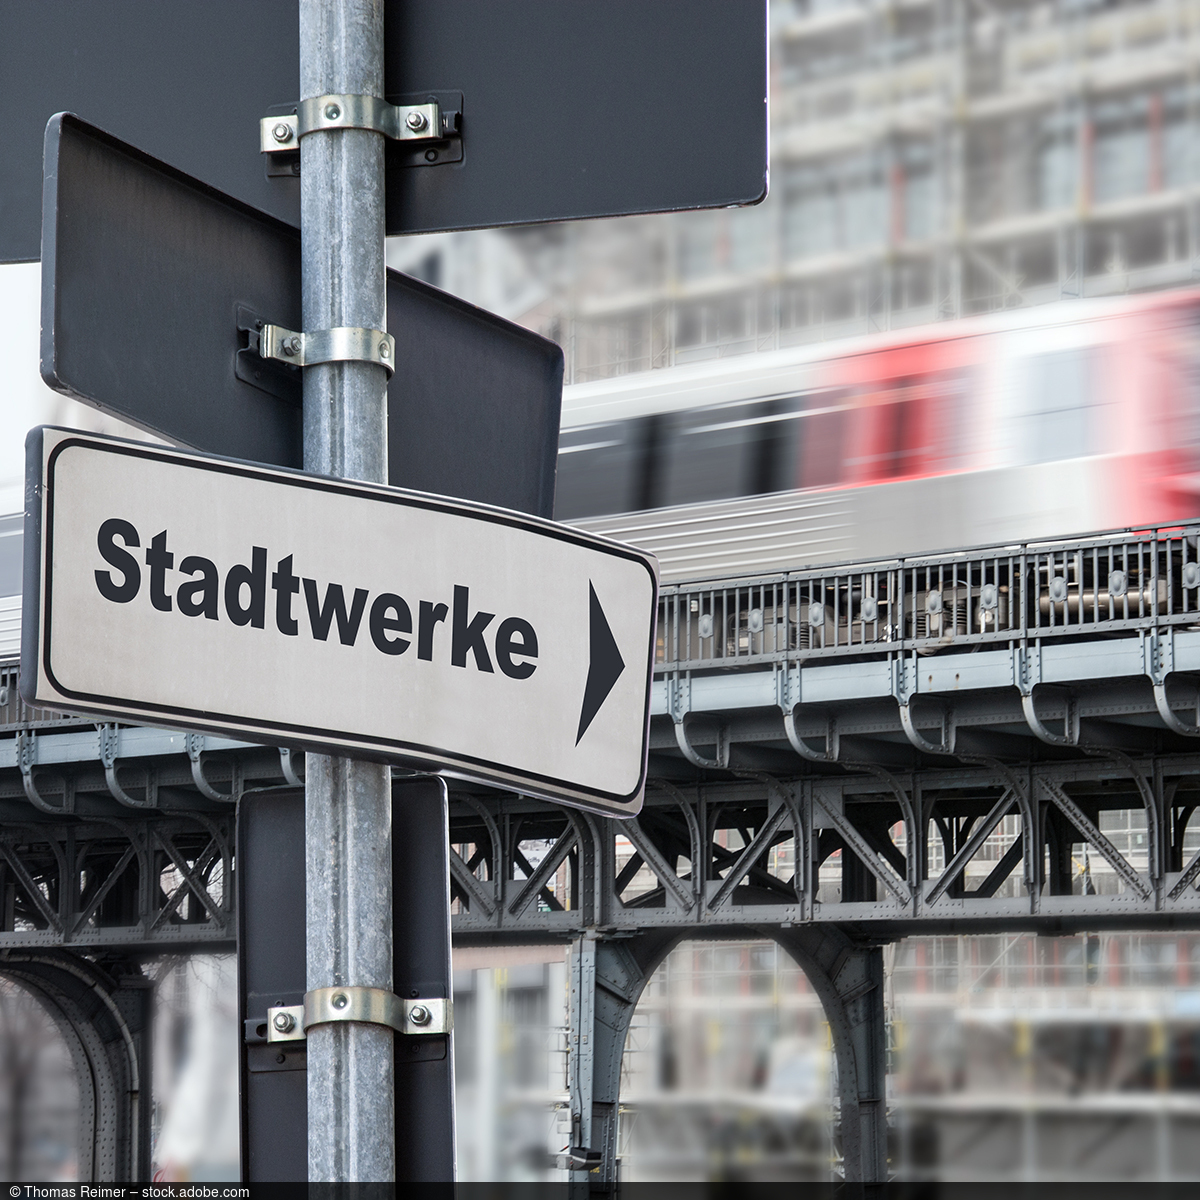 Straßenschild mit Beschriftung "Stadtwerke" und einer vorbeifahrenden Bahn im Hintergrund